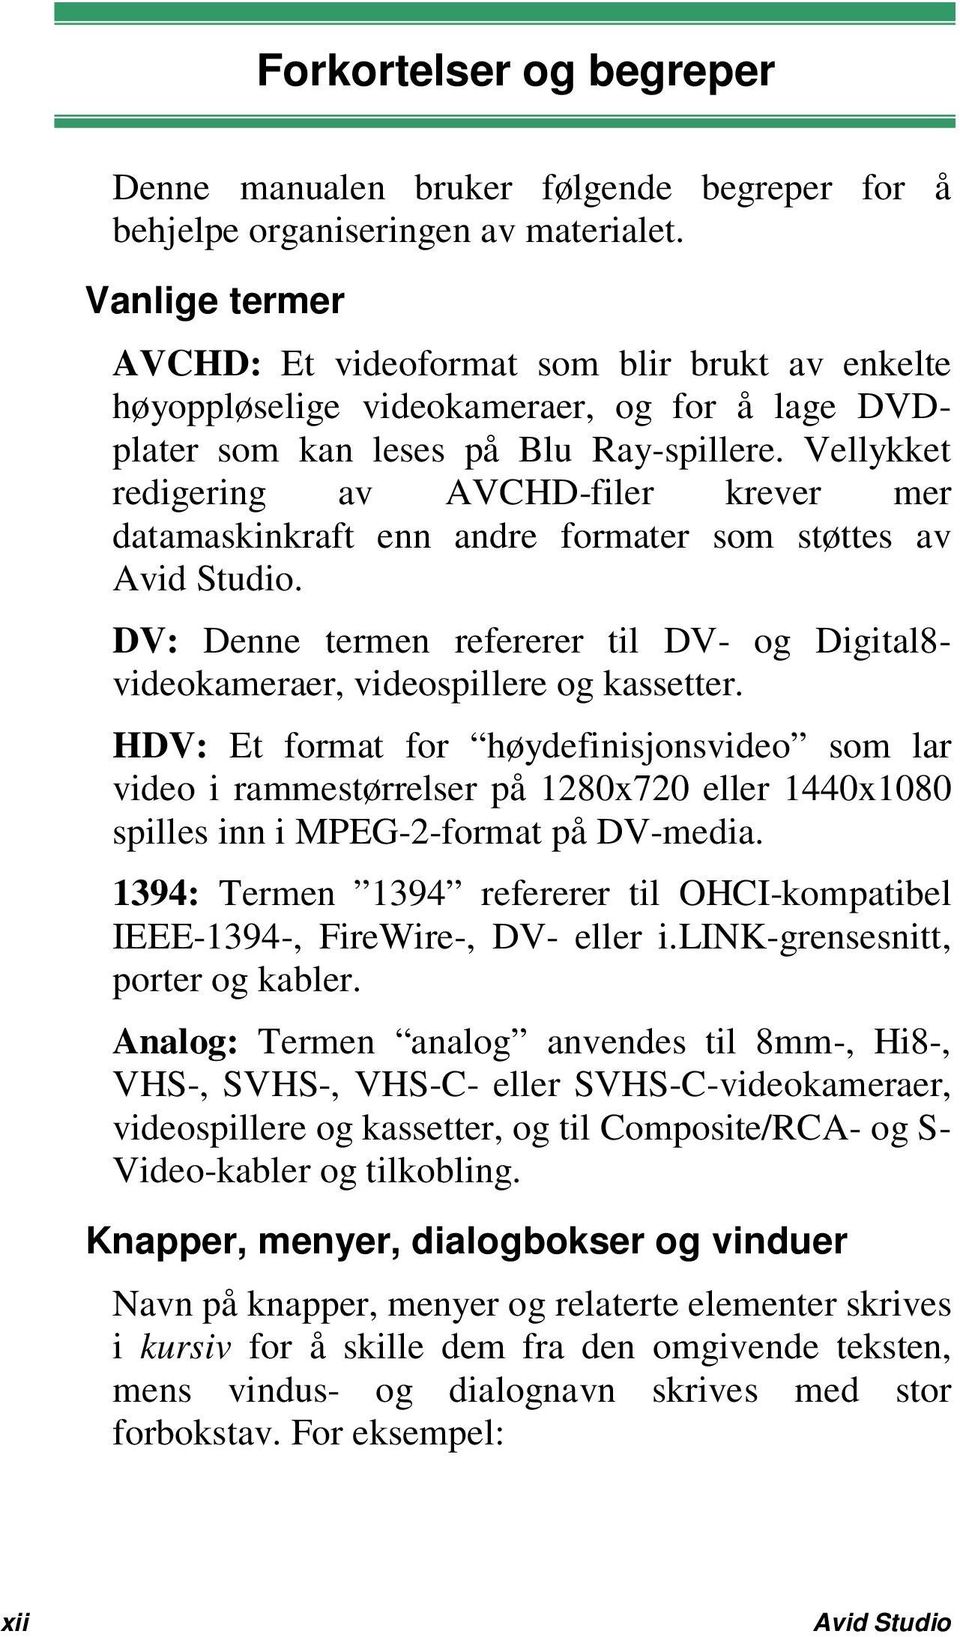 Vellykket redigering av AVCHD-filer krever mer datamaskinkraft enn andre formater som støttes av Avid Studio. DV: Denne termen refererer til DV- og Digital8- videokameraer, videospillere og kassetter.